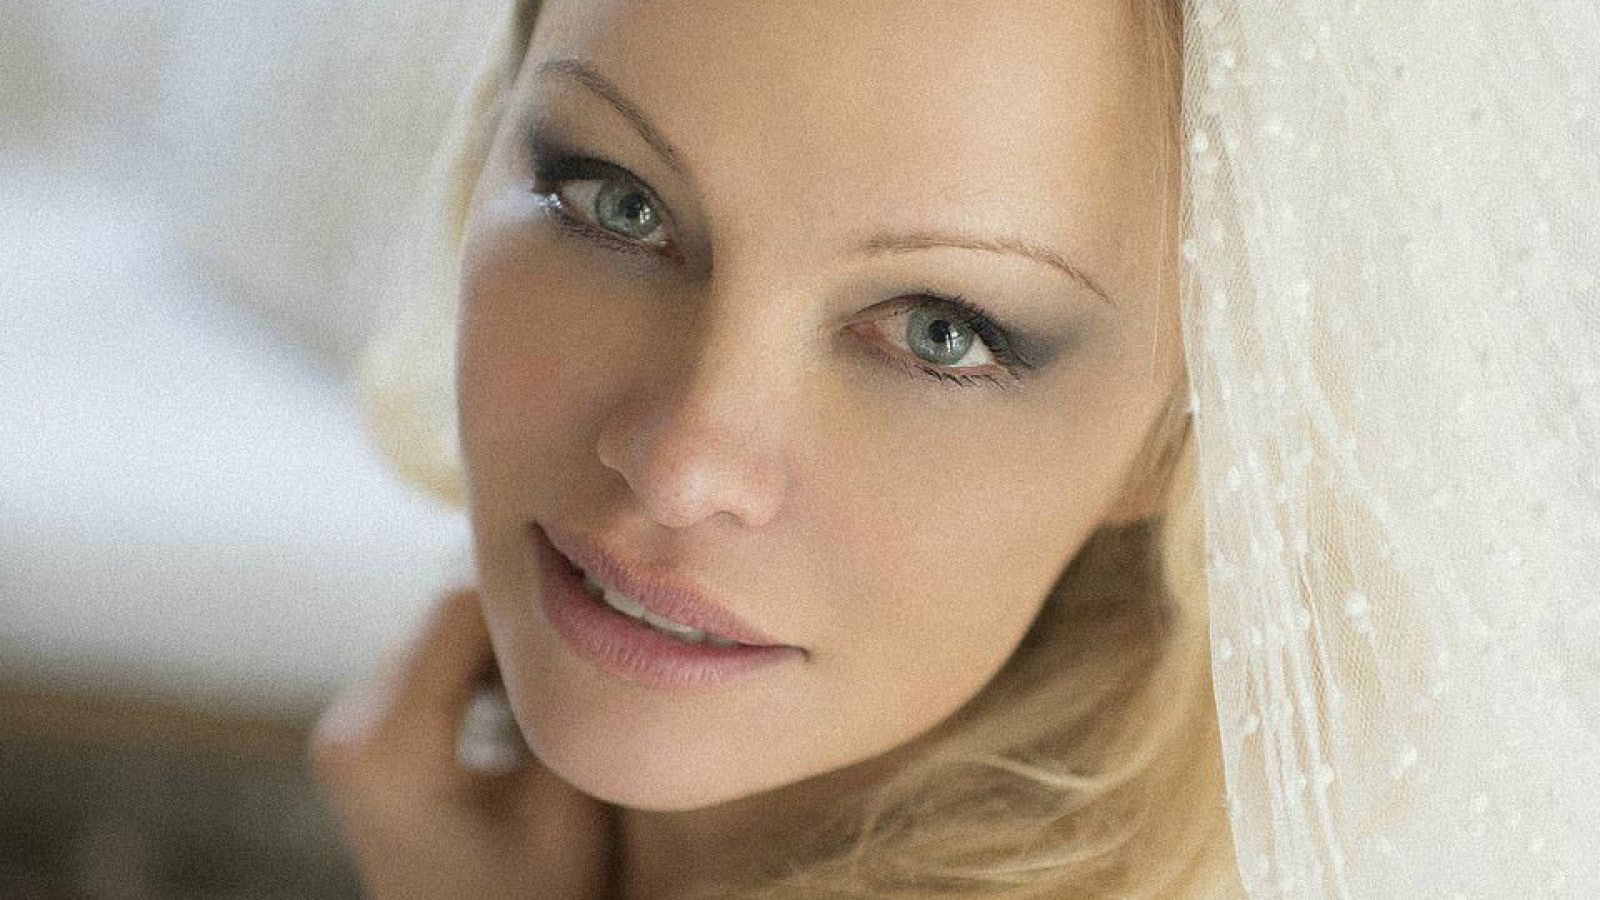 Espectacular foto de Pamela Anderson vestida de blanco para casarse con su guardaespaldas Pamela Anderson se casa en secreto con su guardaespaldas, Dan Hayhurst